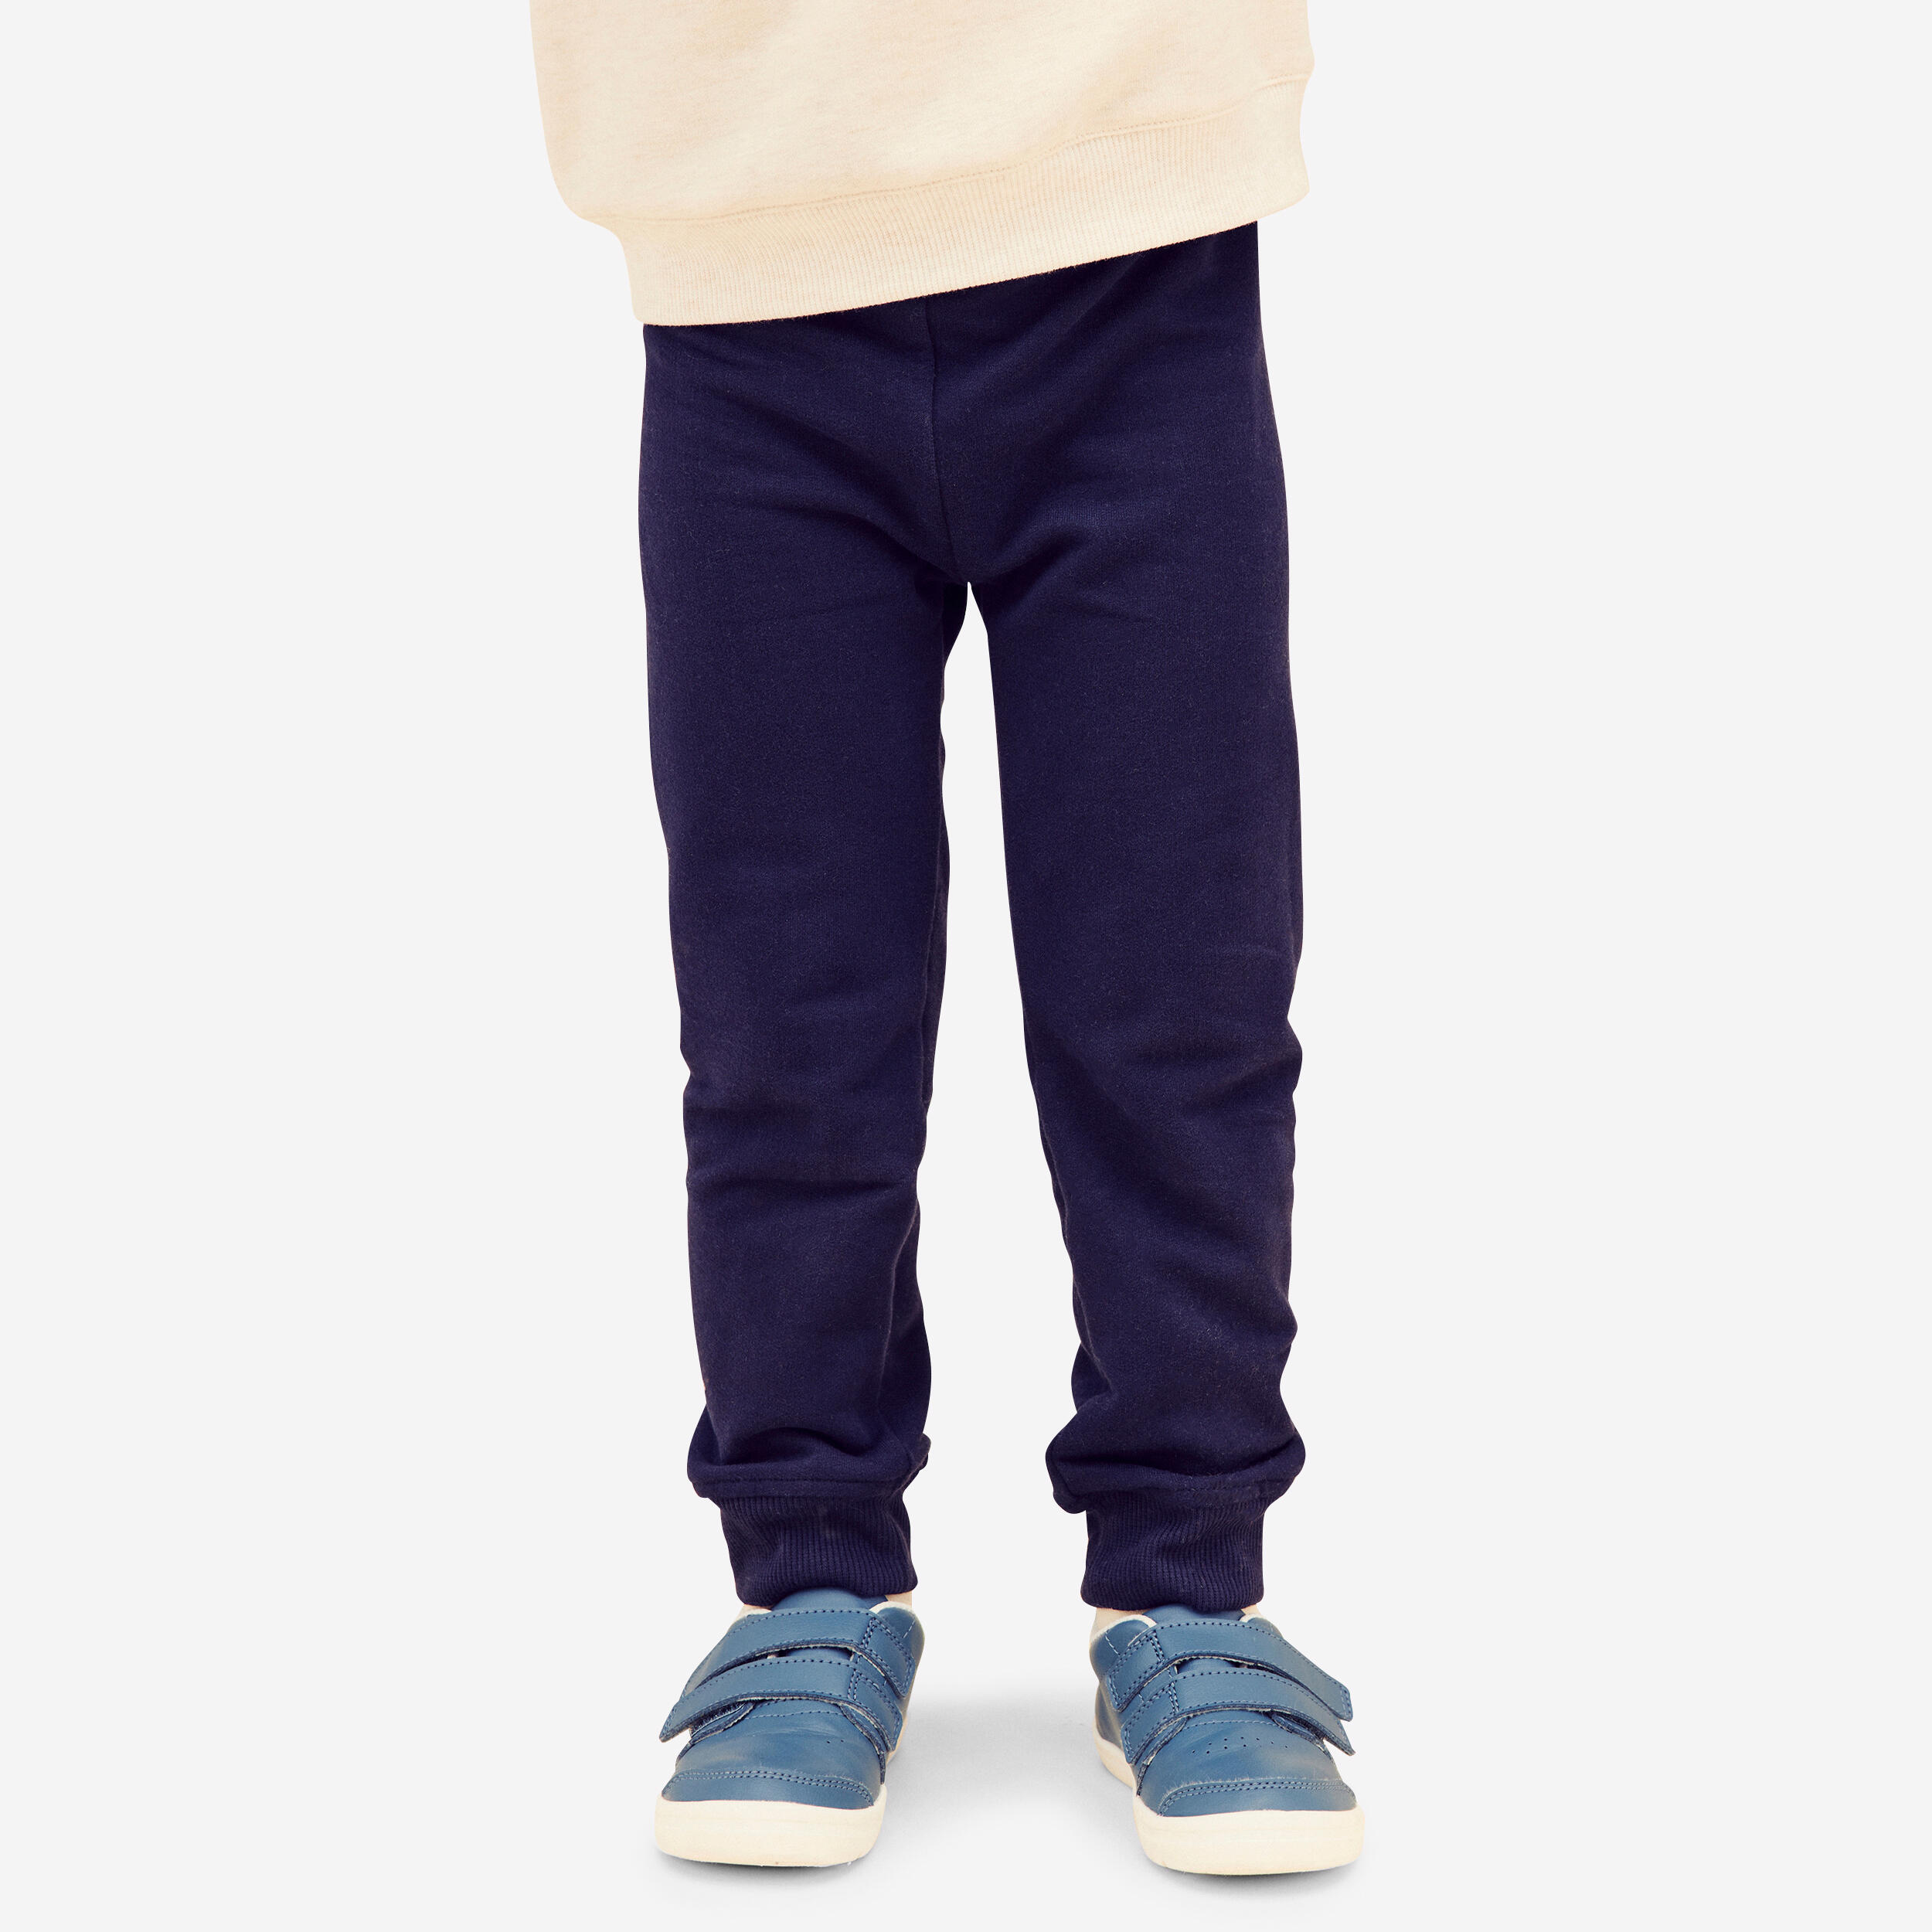 Pantalon coupe classique enfant - basique bleu - DOMYOS